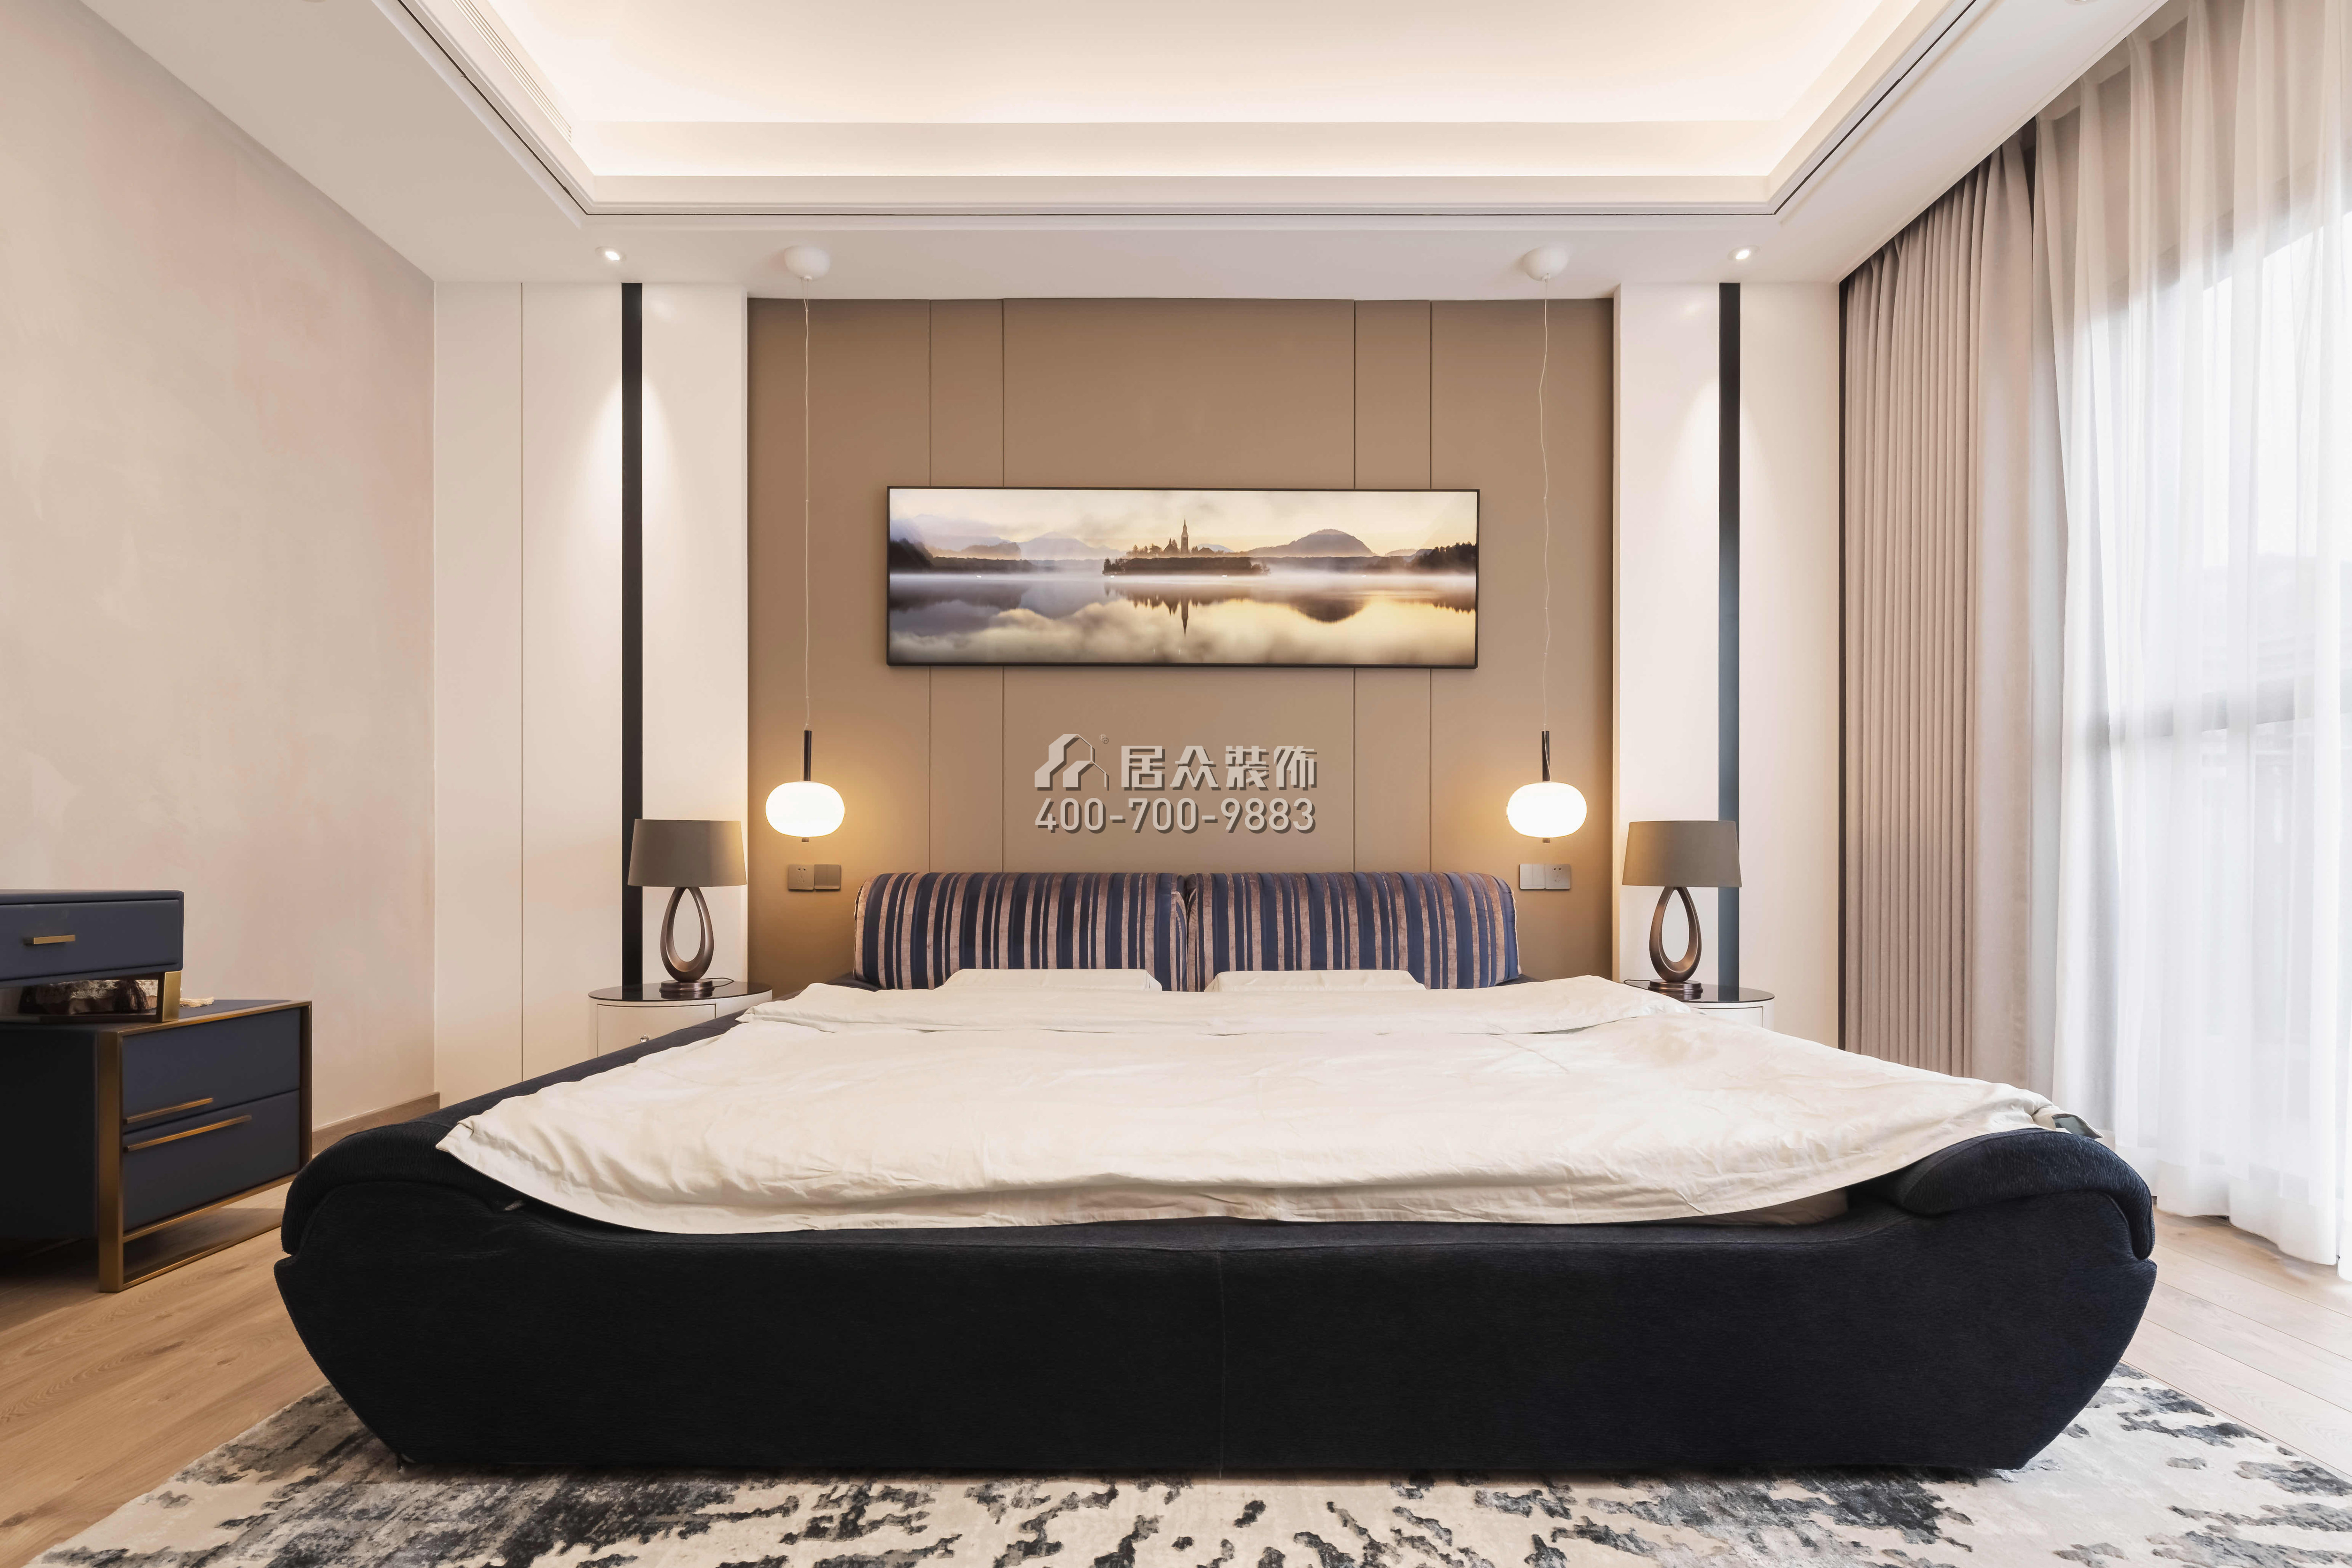 海逸豪庭御峰321平方米现代简约风格别墅户型卧室装修效果图